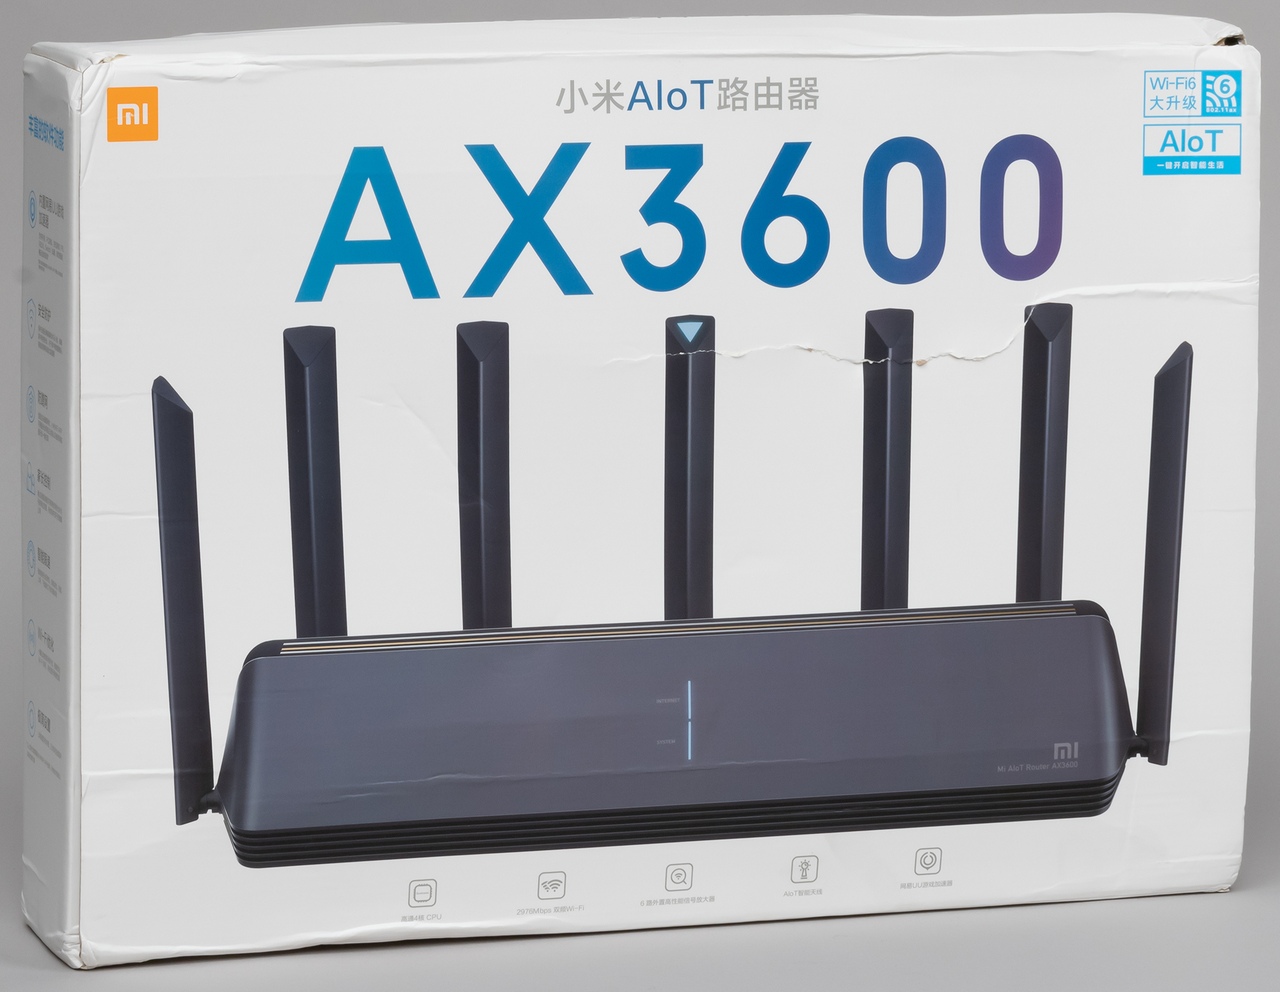 Роутер Xiaomi AIoT Router AX3600